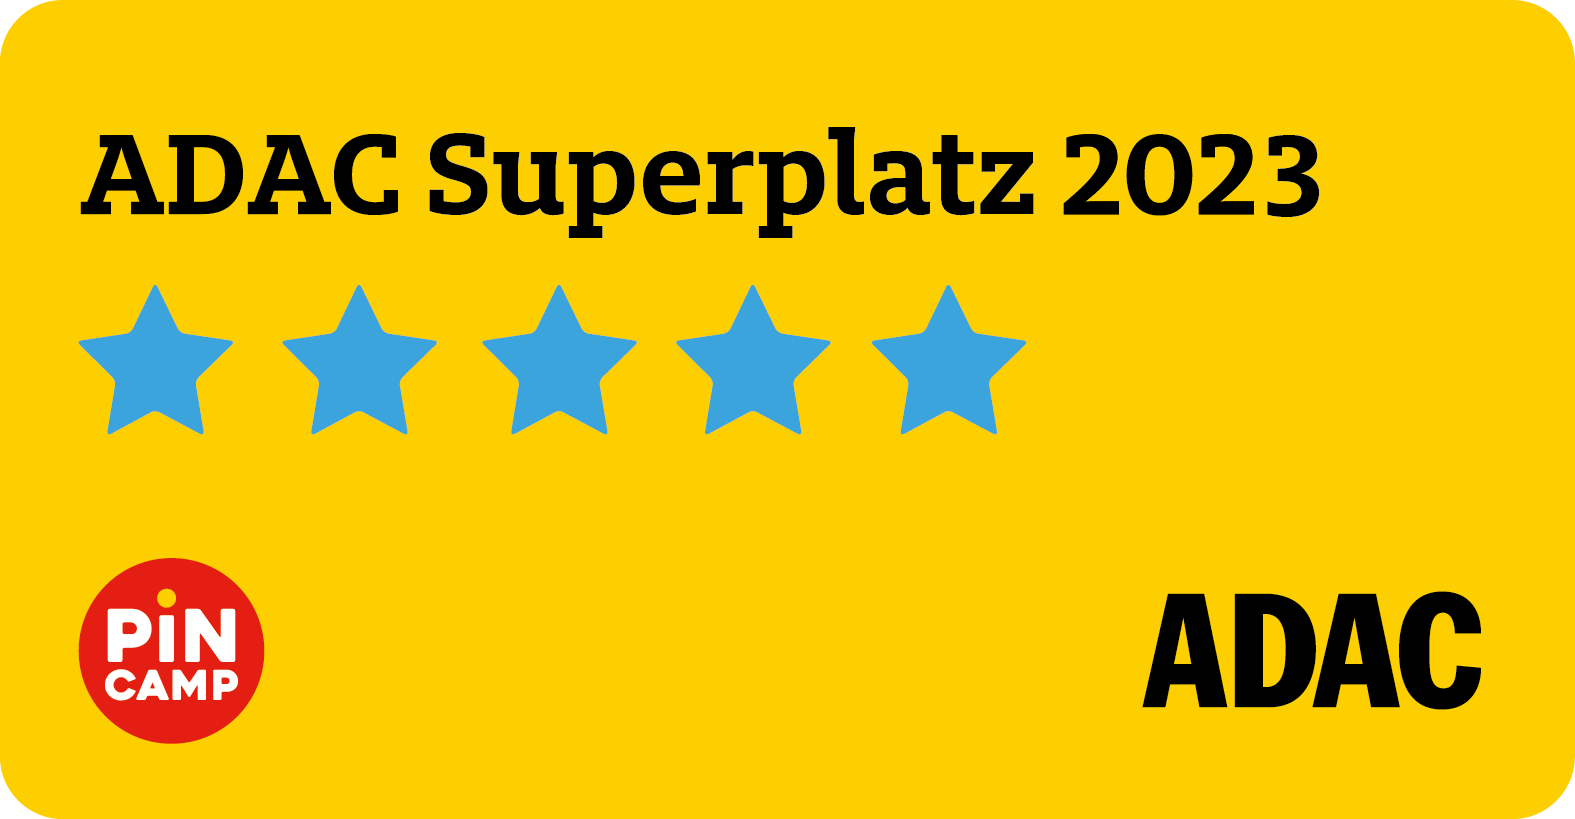 ADAC Superplatz 2023 - Pincamp